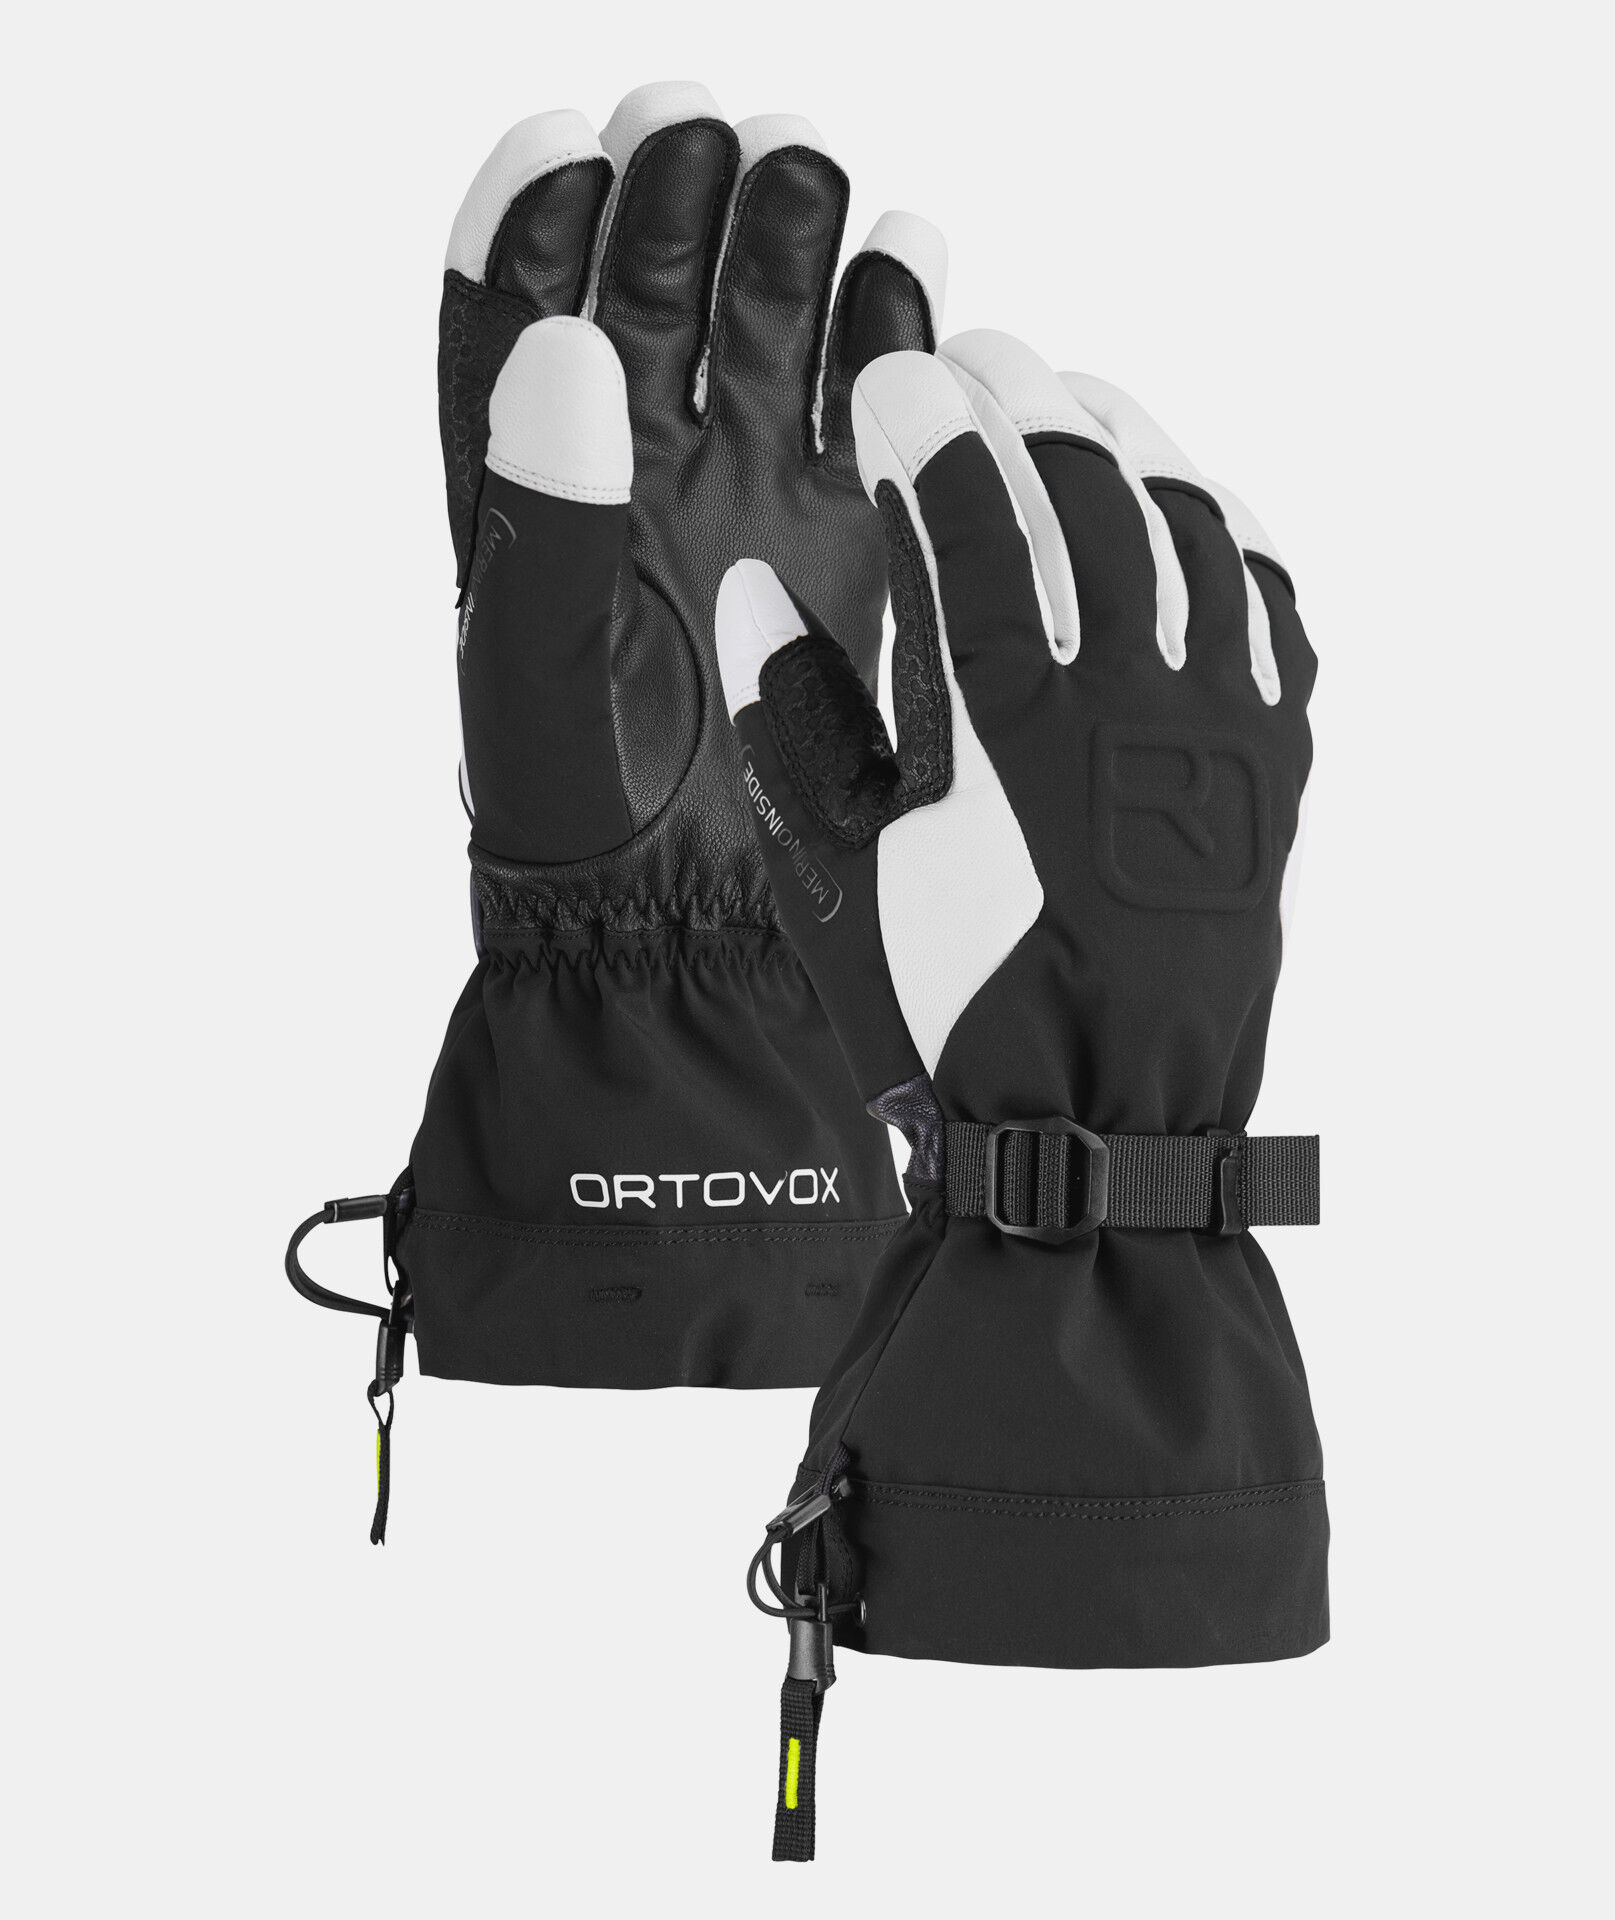 Ortovox Merino Freeride Glove - Guanti da sci - Uomo